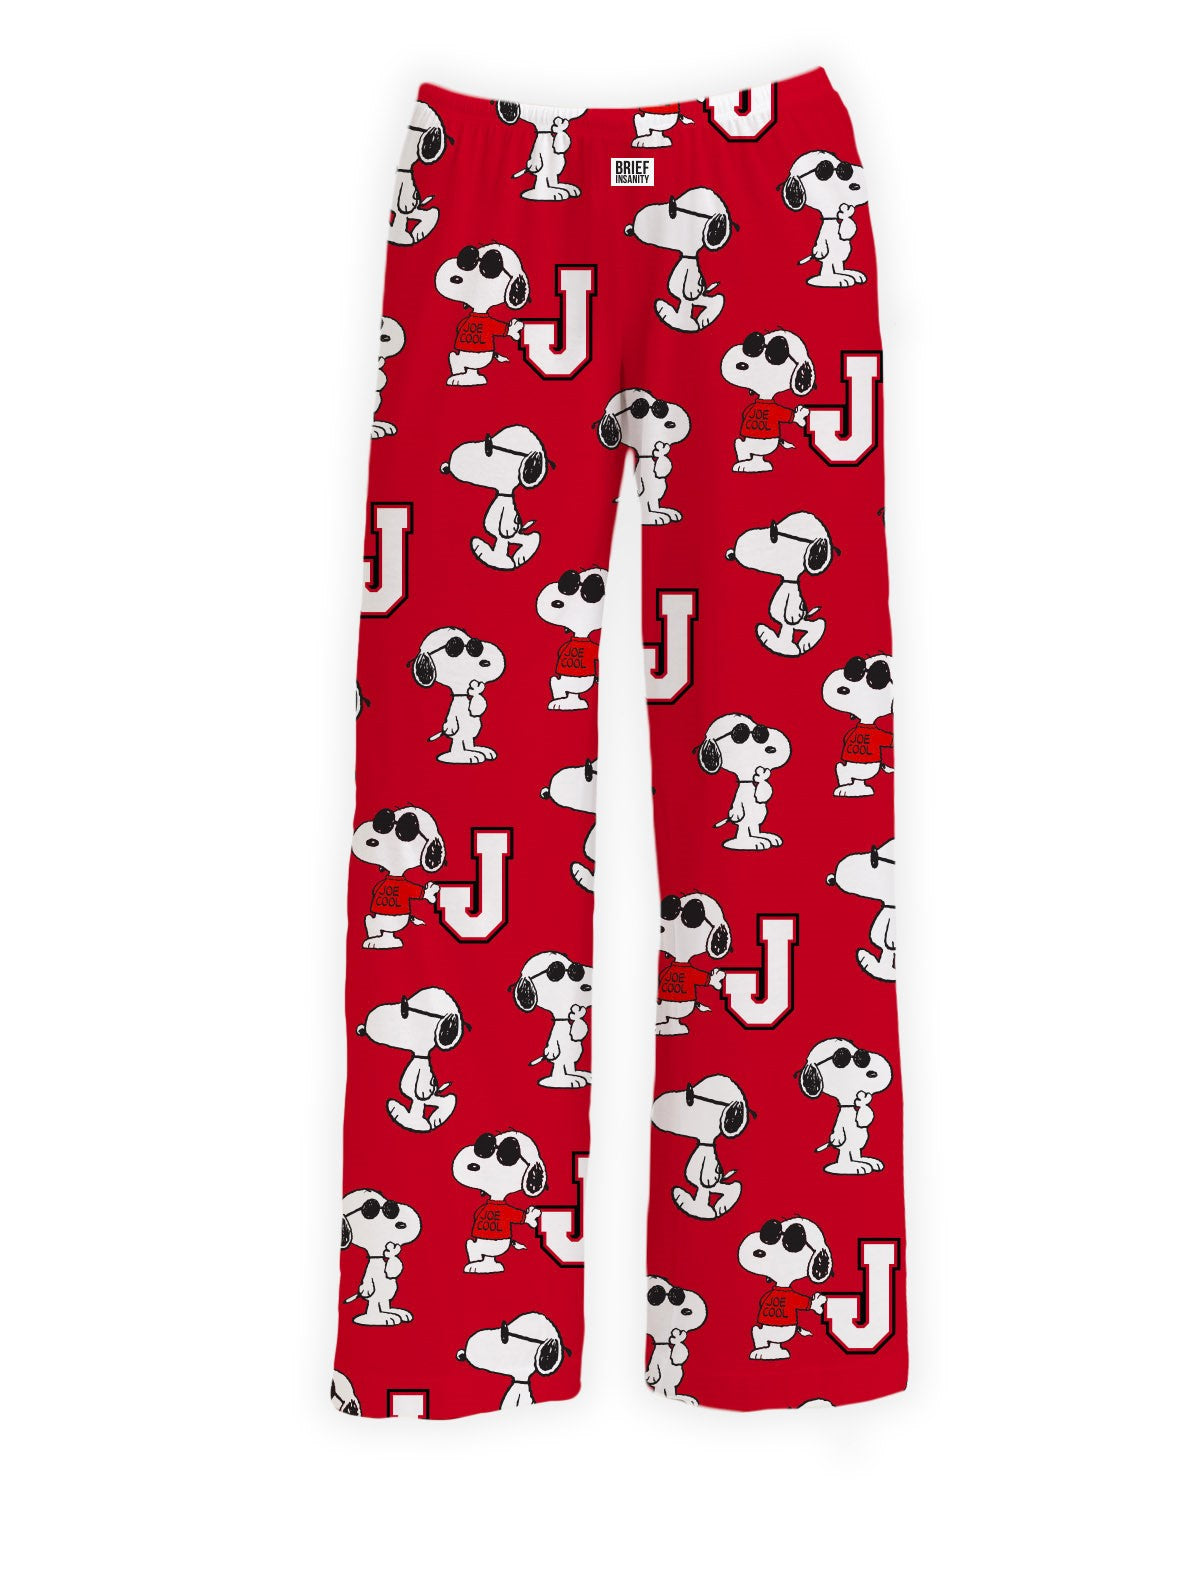 BRIEF INSANITY Red Snoopy J Pajama Lounge Pants